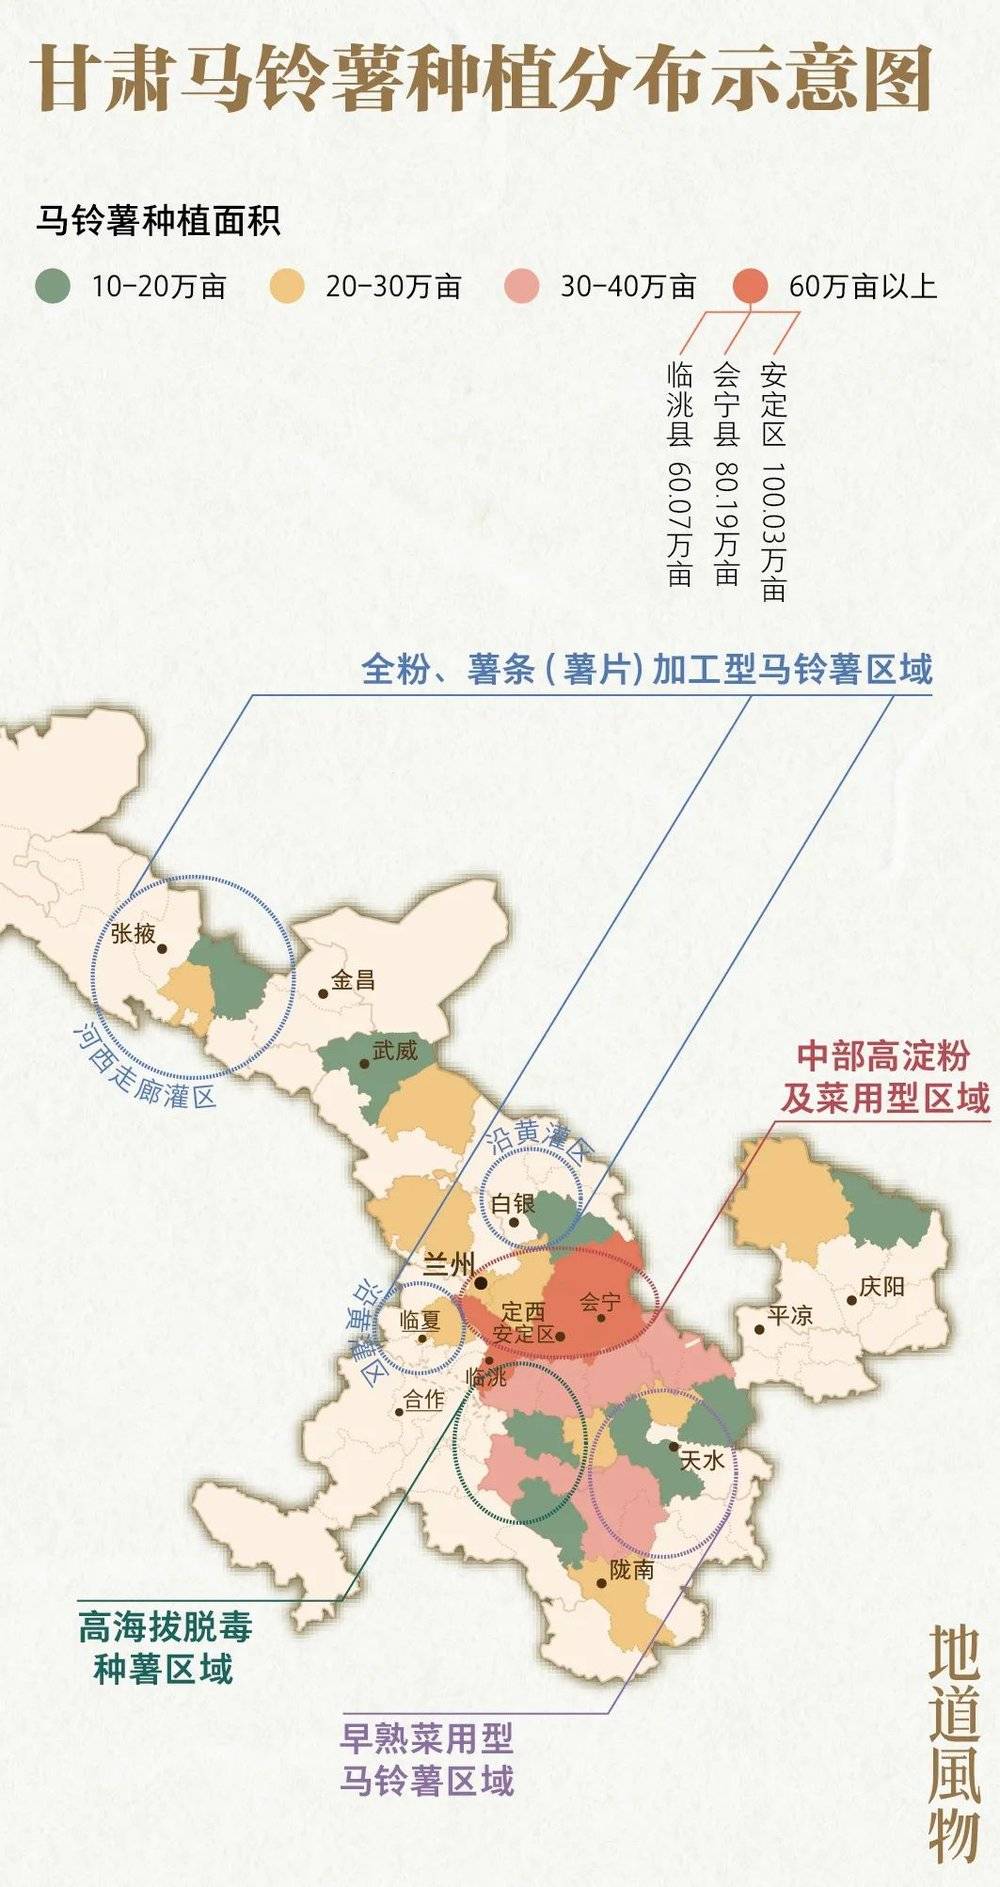 甘肃是全国马铃薯种植大省，从河西到陇南已形成四大优势产区。制图/monk<br>